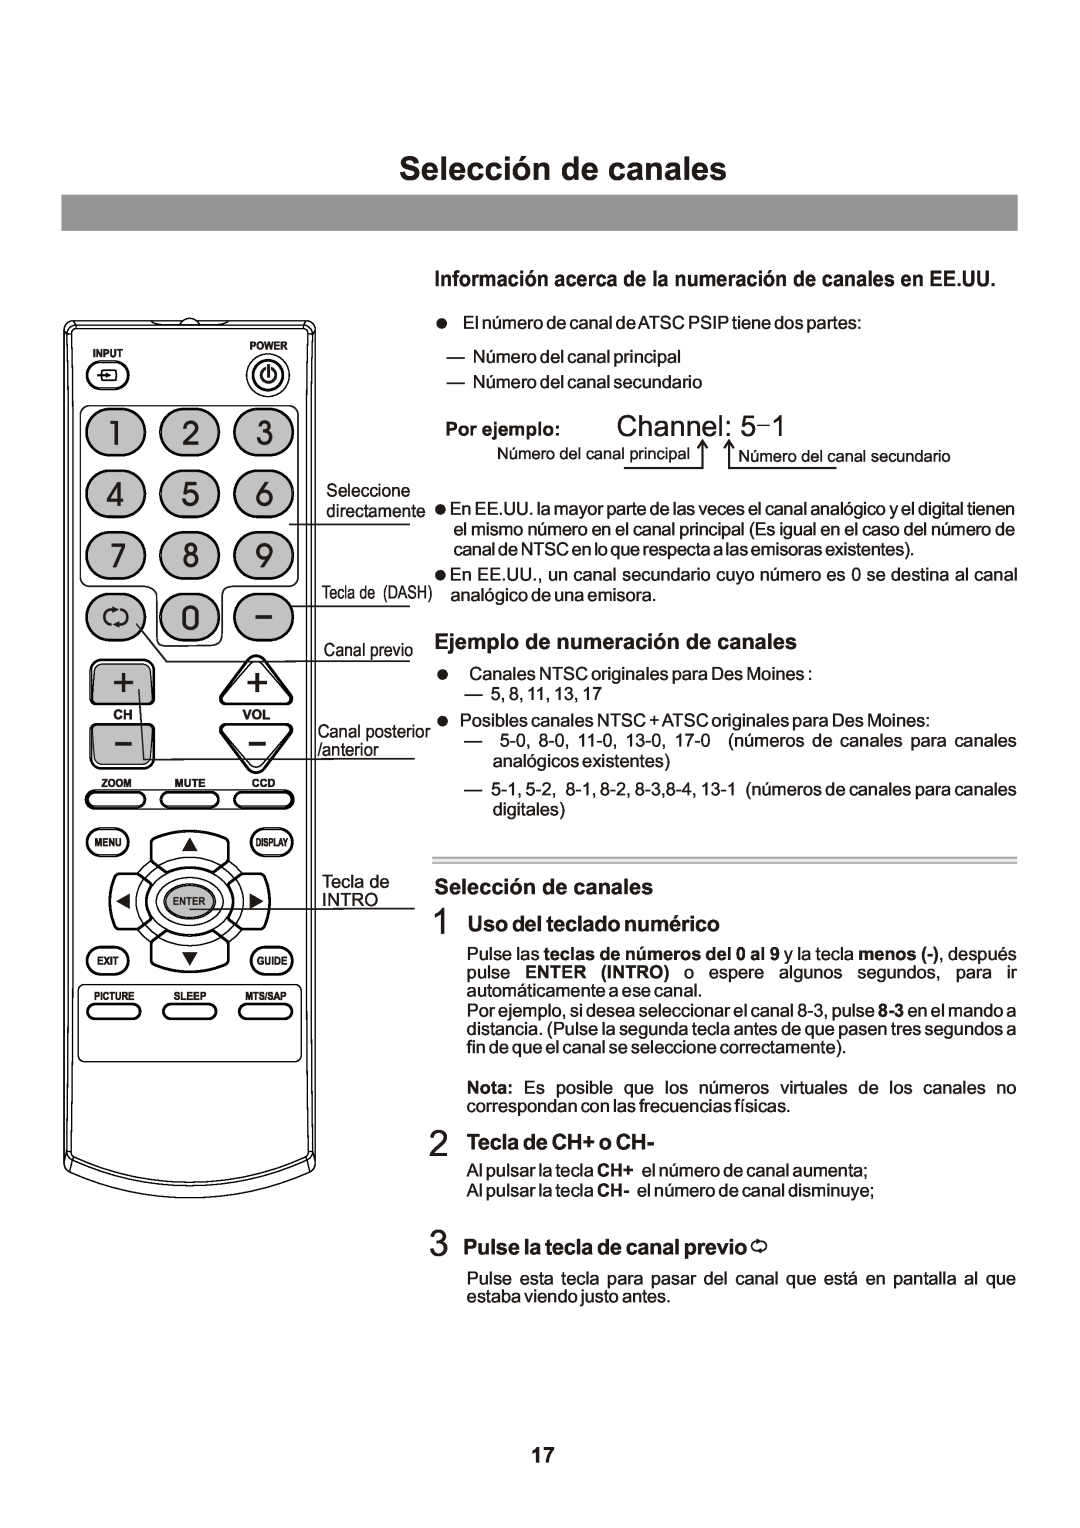 Memorex Flat Screen Tv manual Selección de canales, Channel 5, Información acerca de la numeración de canales en EE.UU 